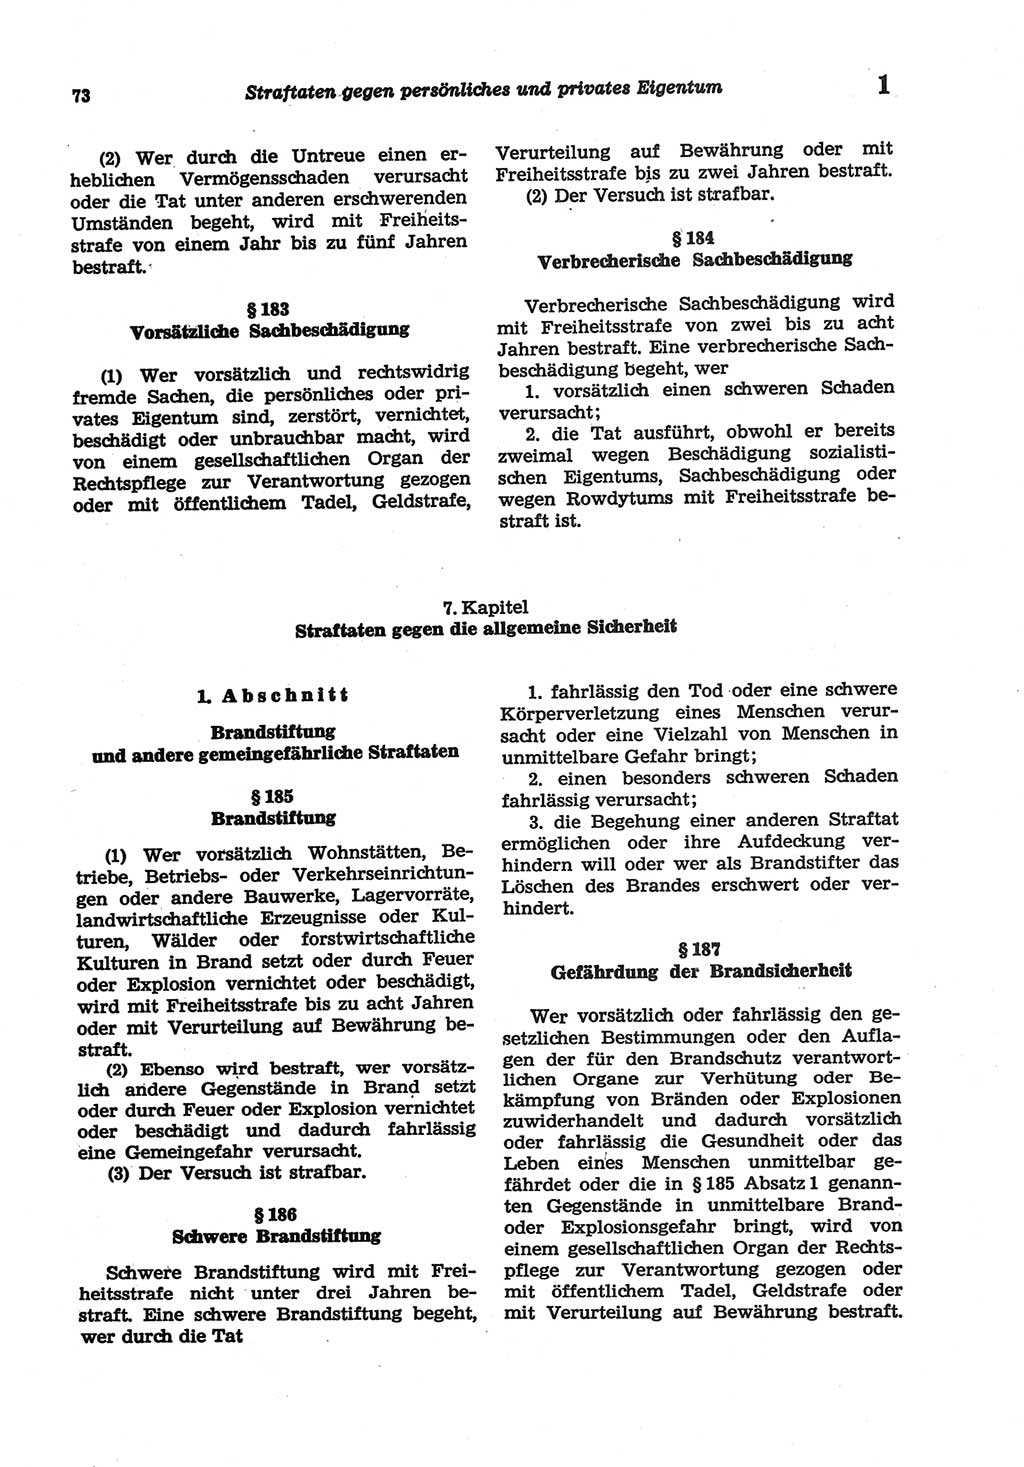 Strafgesetzbuch (StGB) der Deutschen Demokratischen Republik (DDR) und angrenzende Gesetze und Bestimmungen 1977, Seite 73 (StGB DDR Ges. Best. 1977, S. 73)